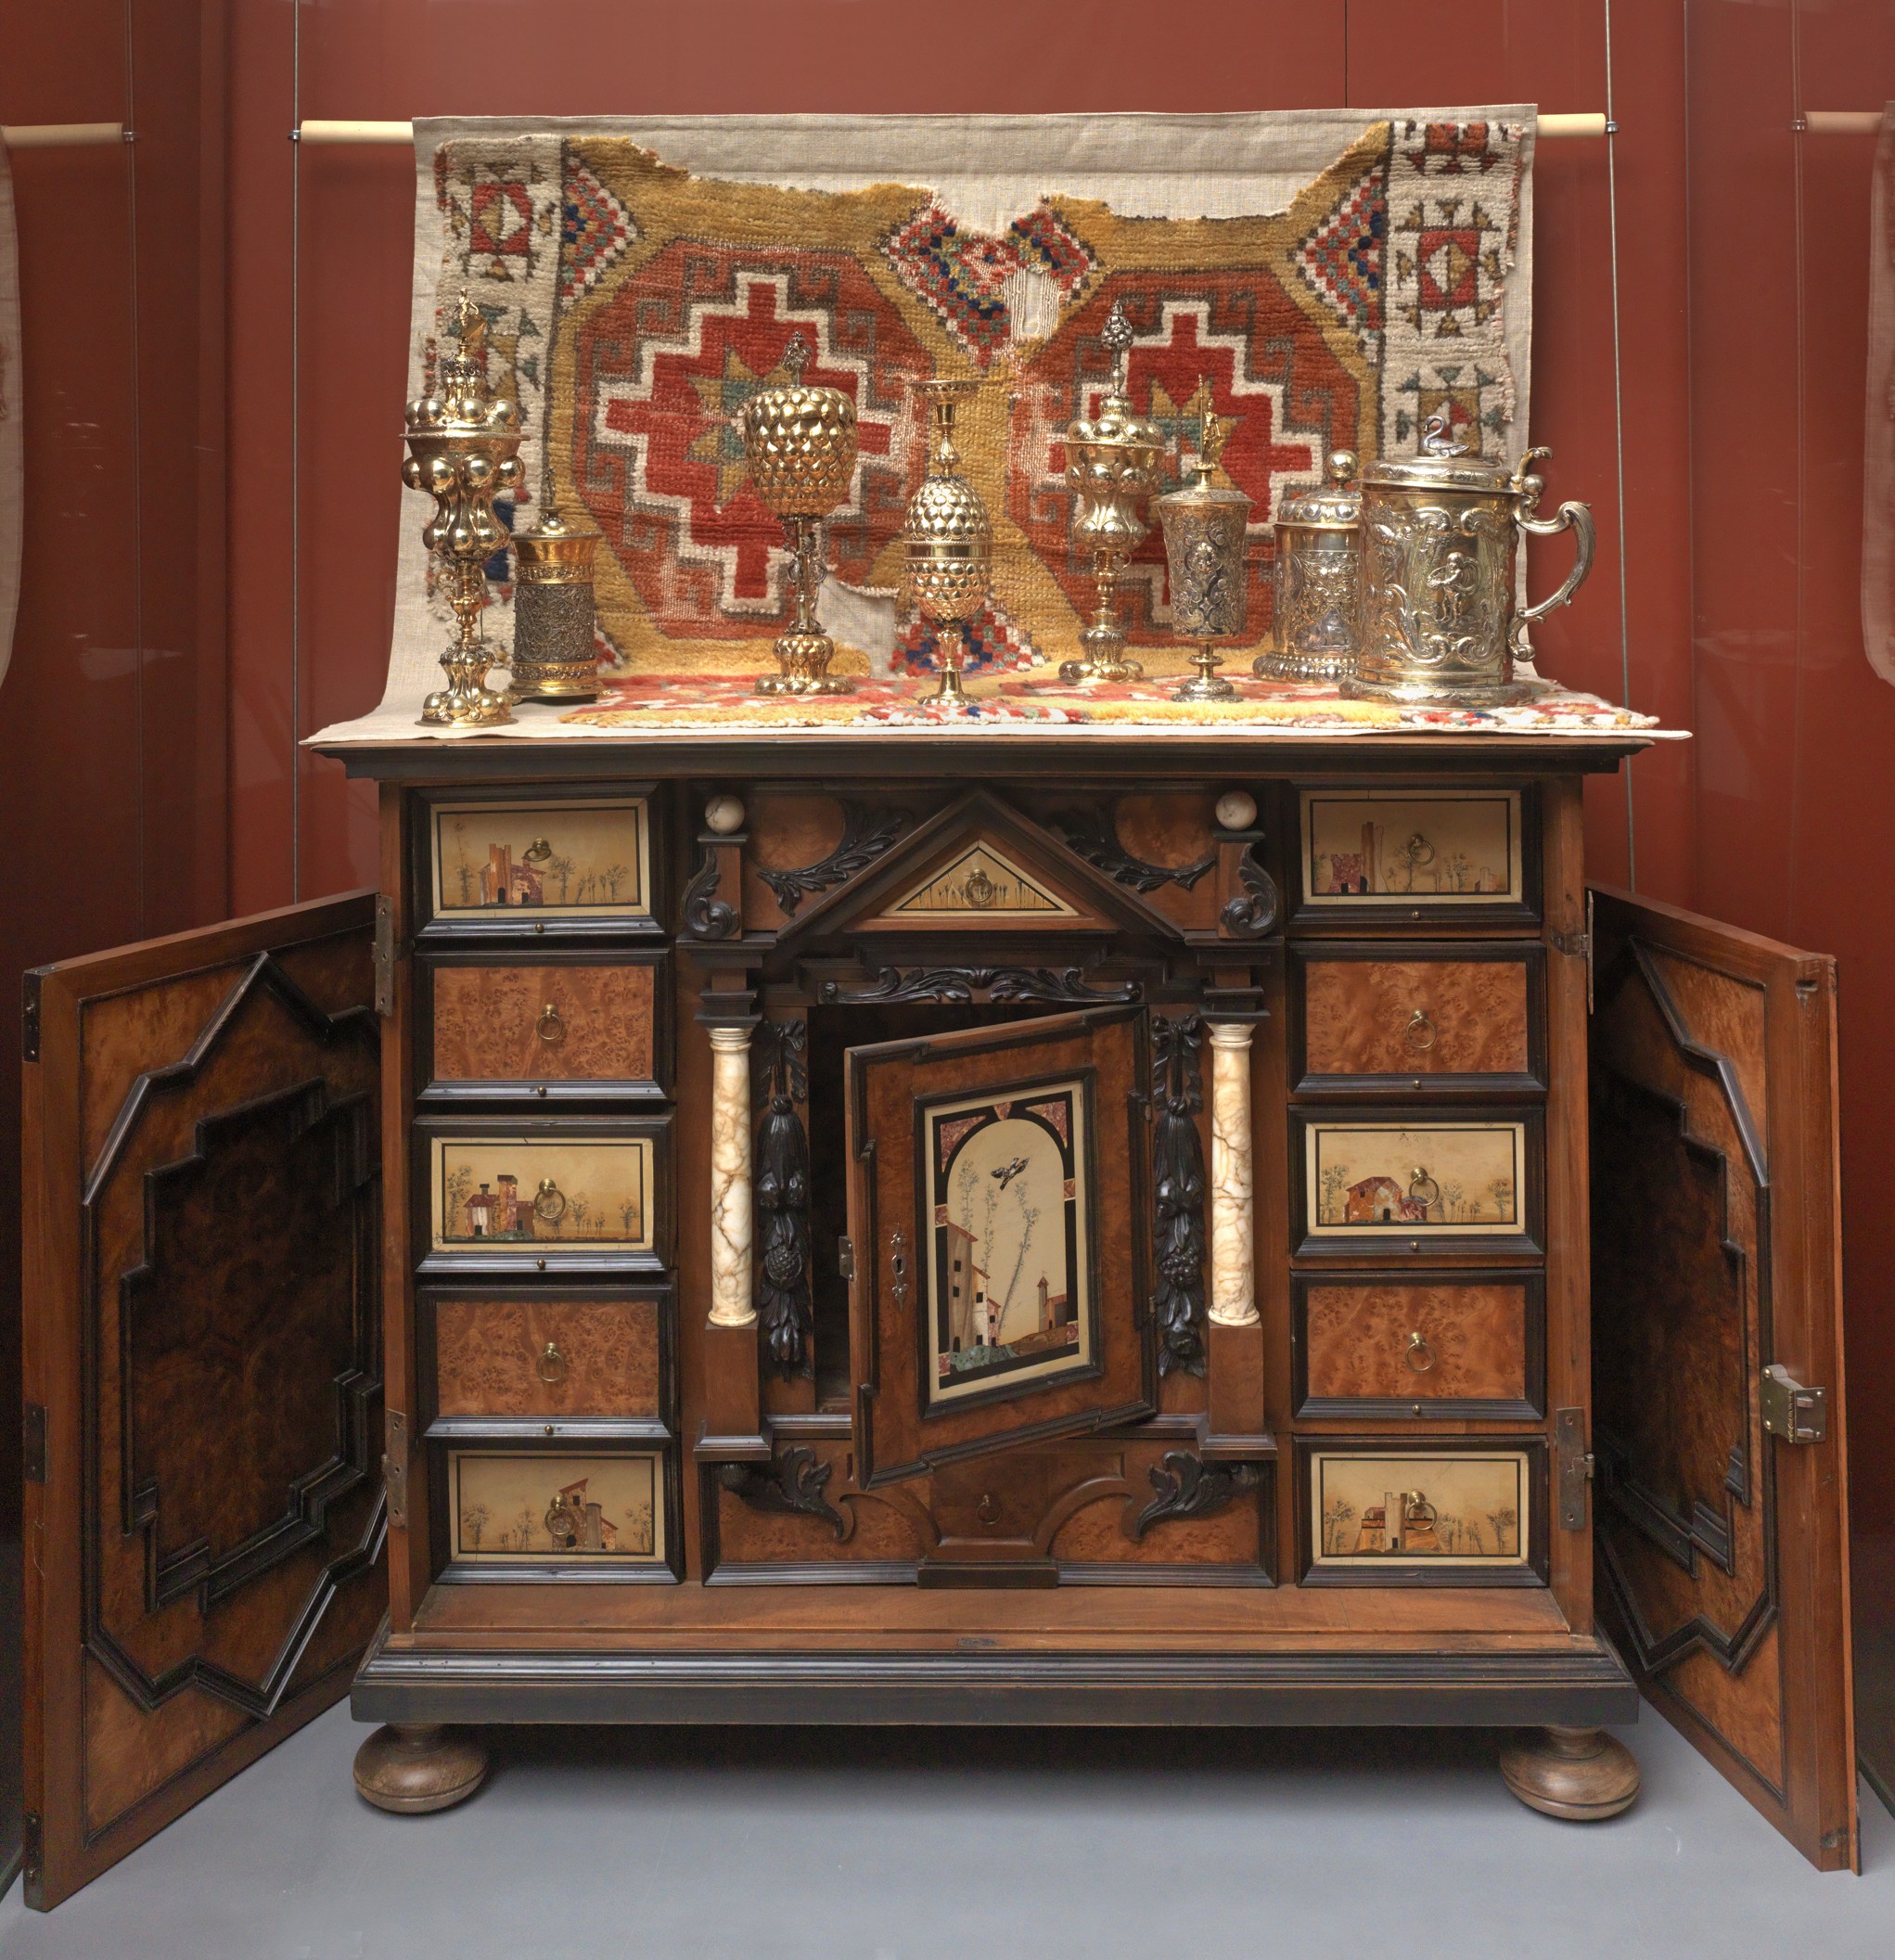 Kabinettschrank "Pietra Dura", zwischen 1680 und 1700 (Städtisches Museum Schloss Rheydt CC BY)